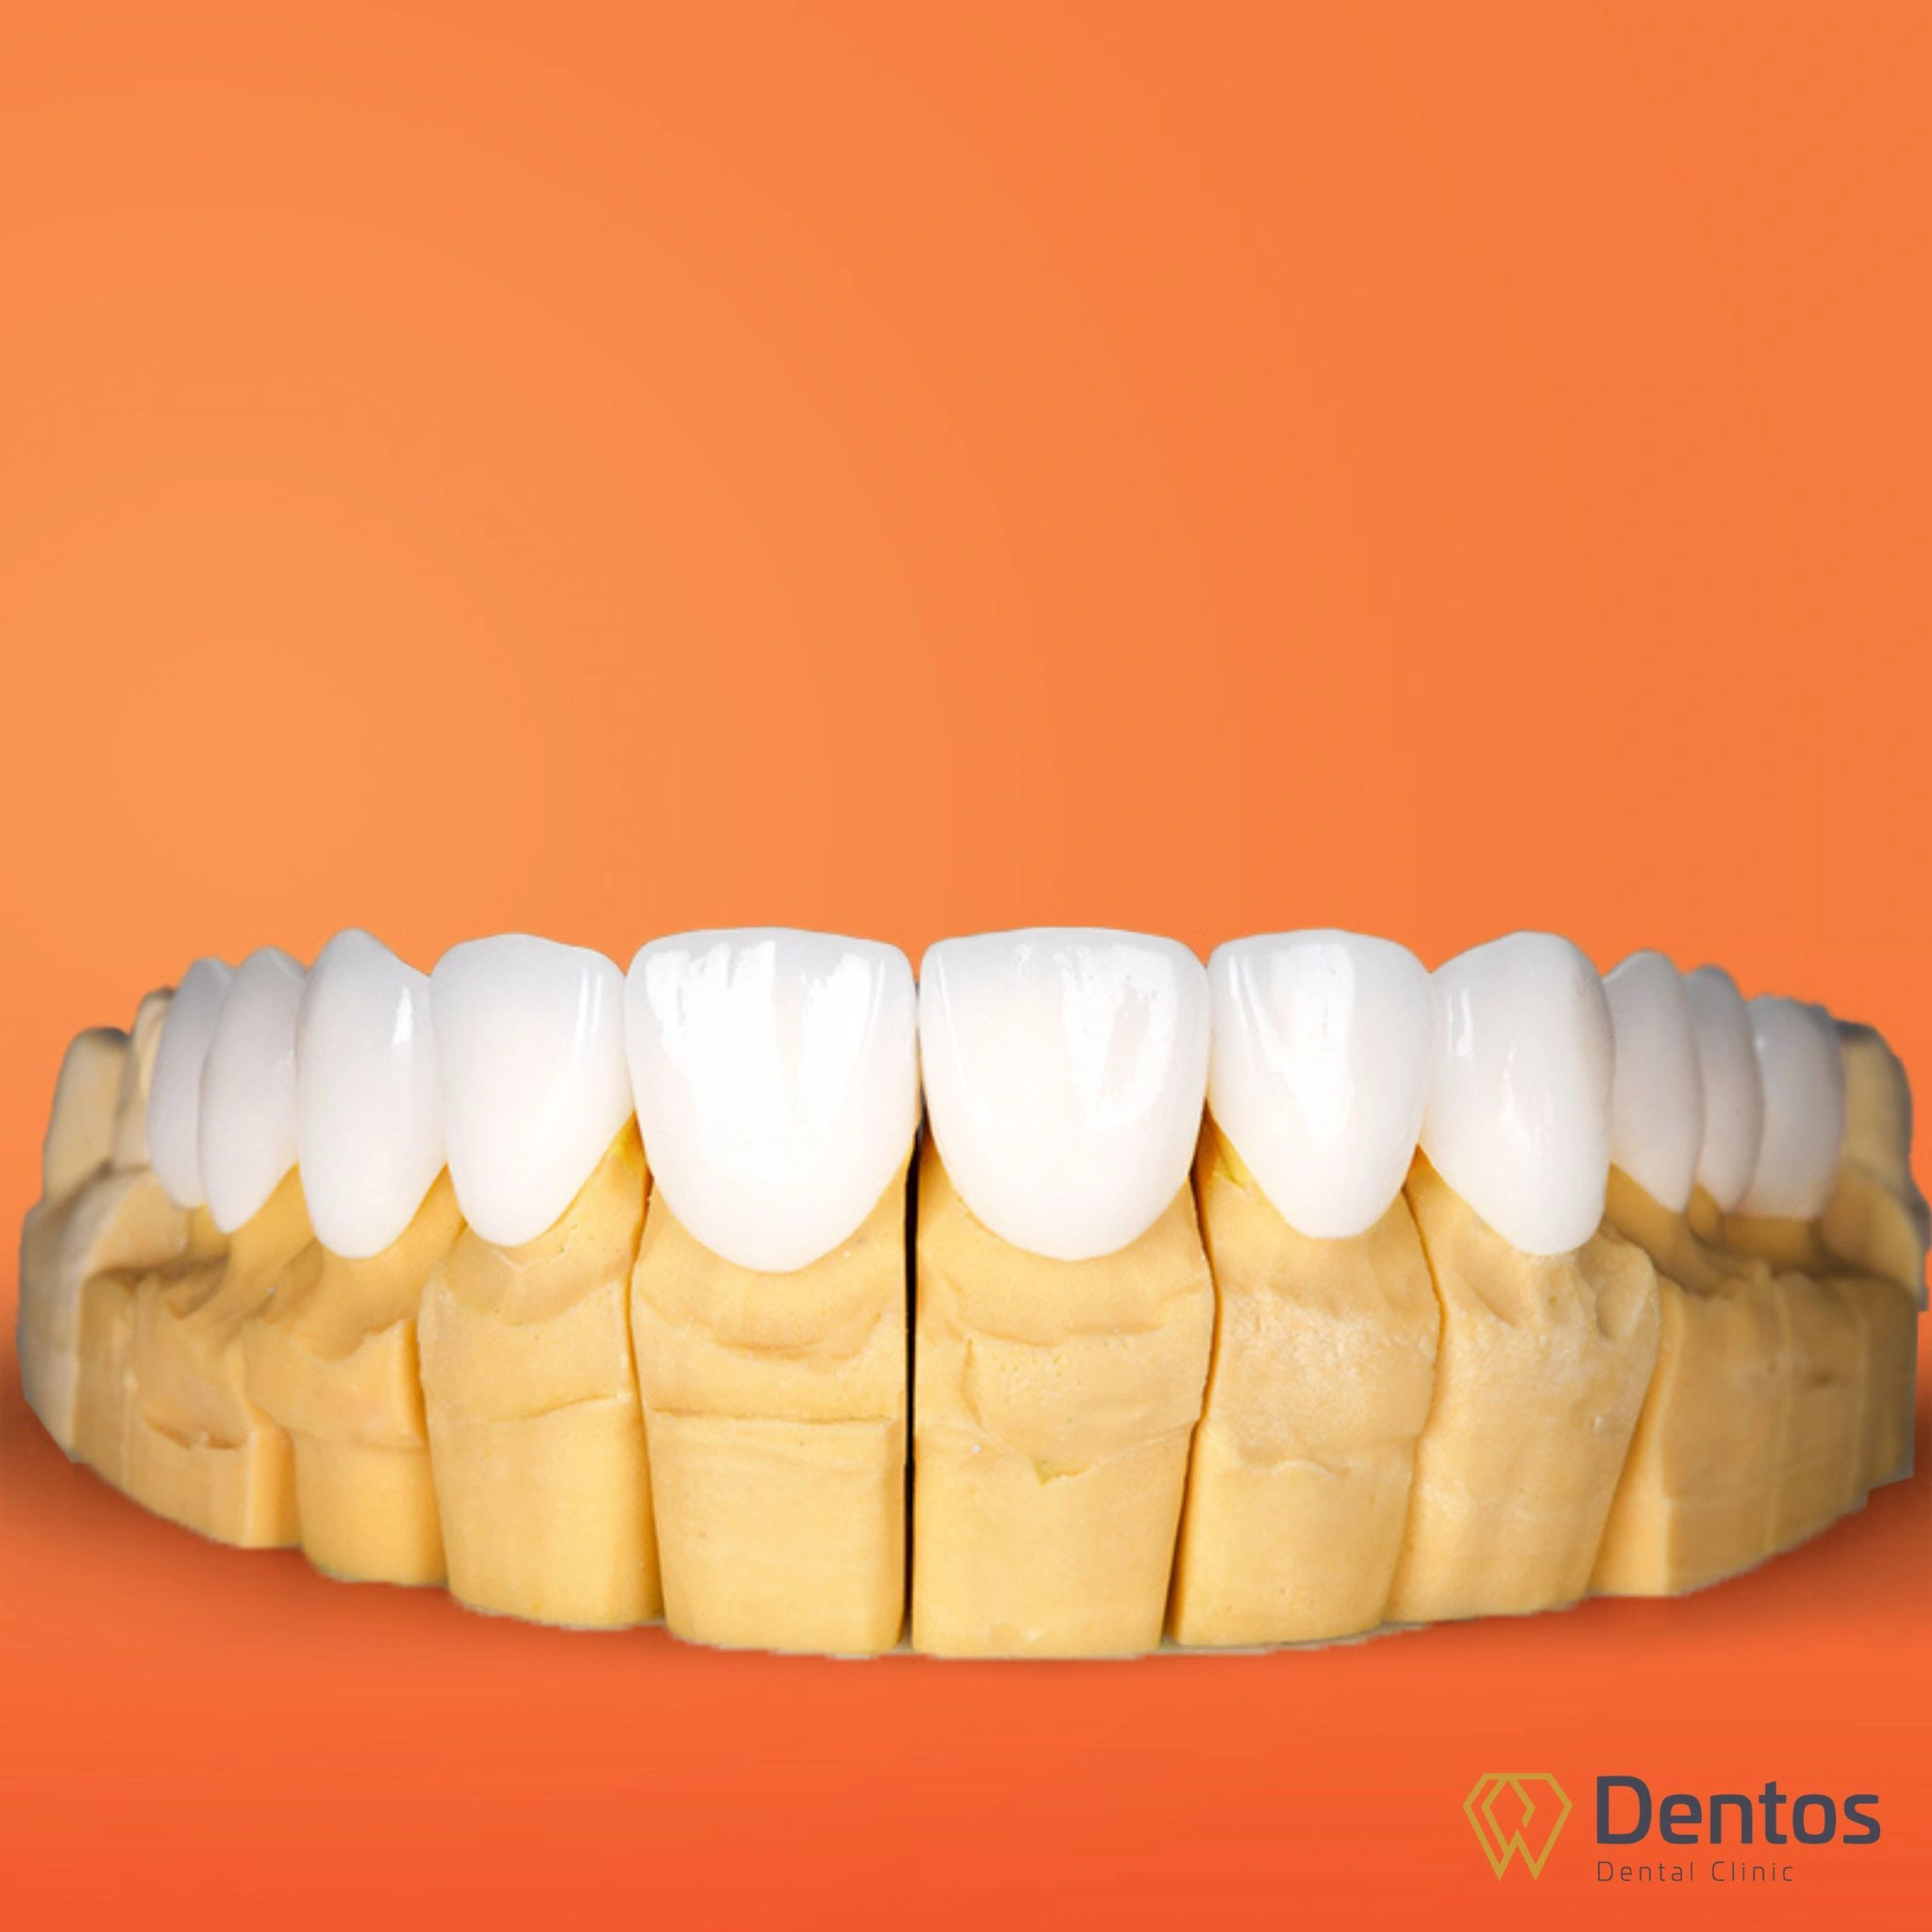 Răng sứ Zirconia thuộc dòng sứ điều trị nhưng vẫn được đánh giá cao về tính thẩm mỹ